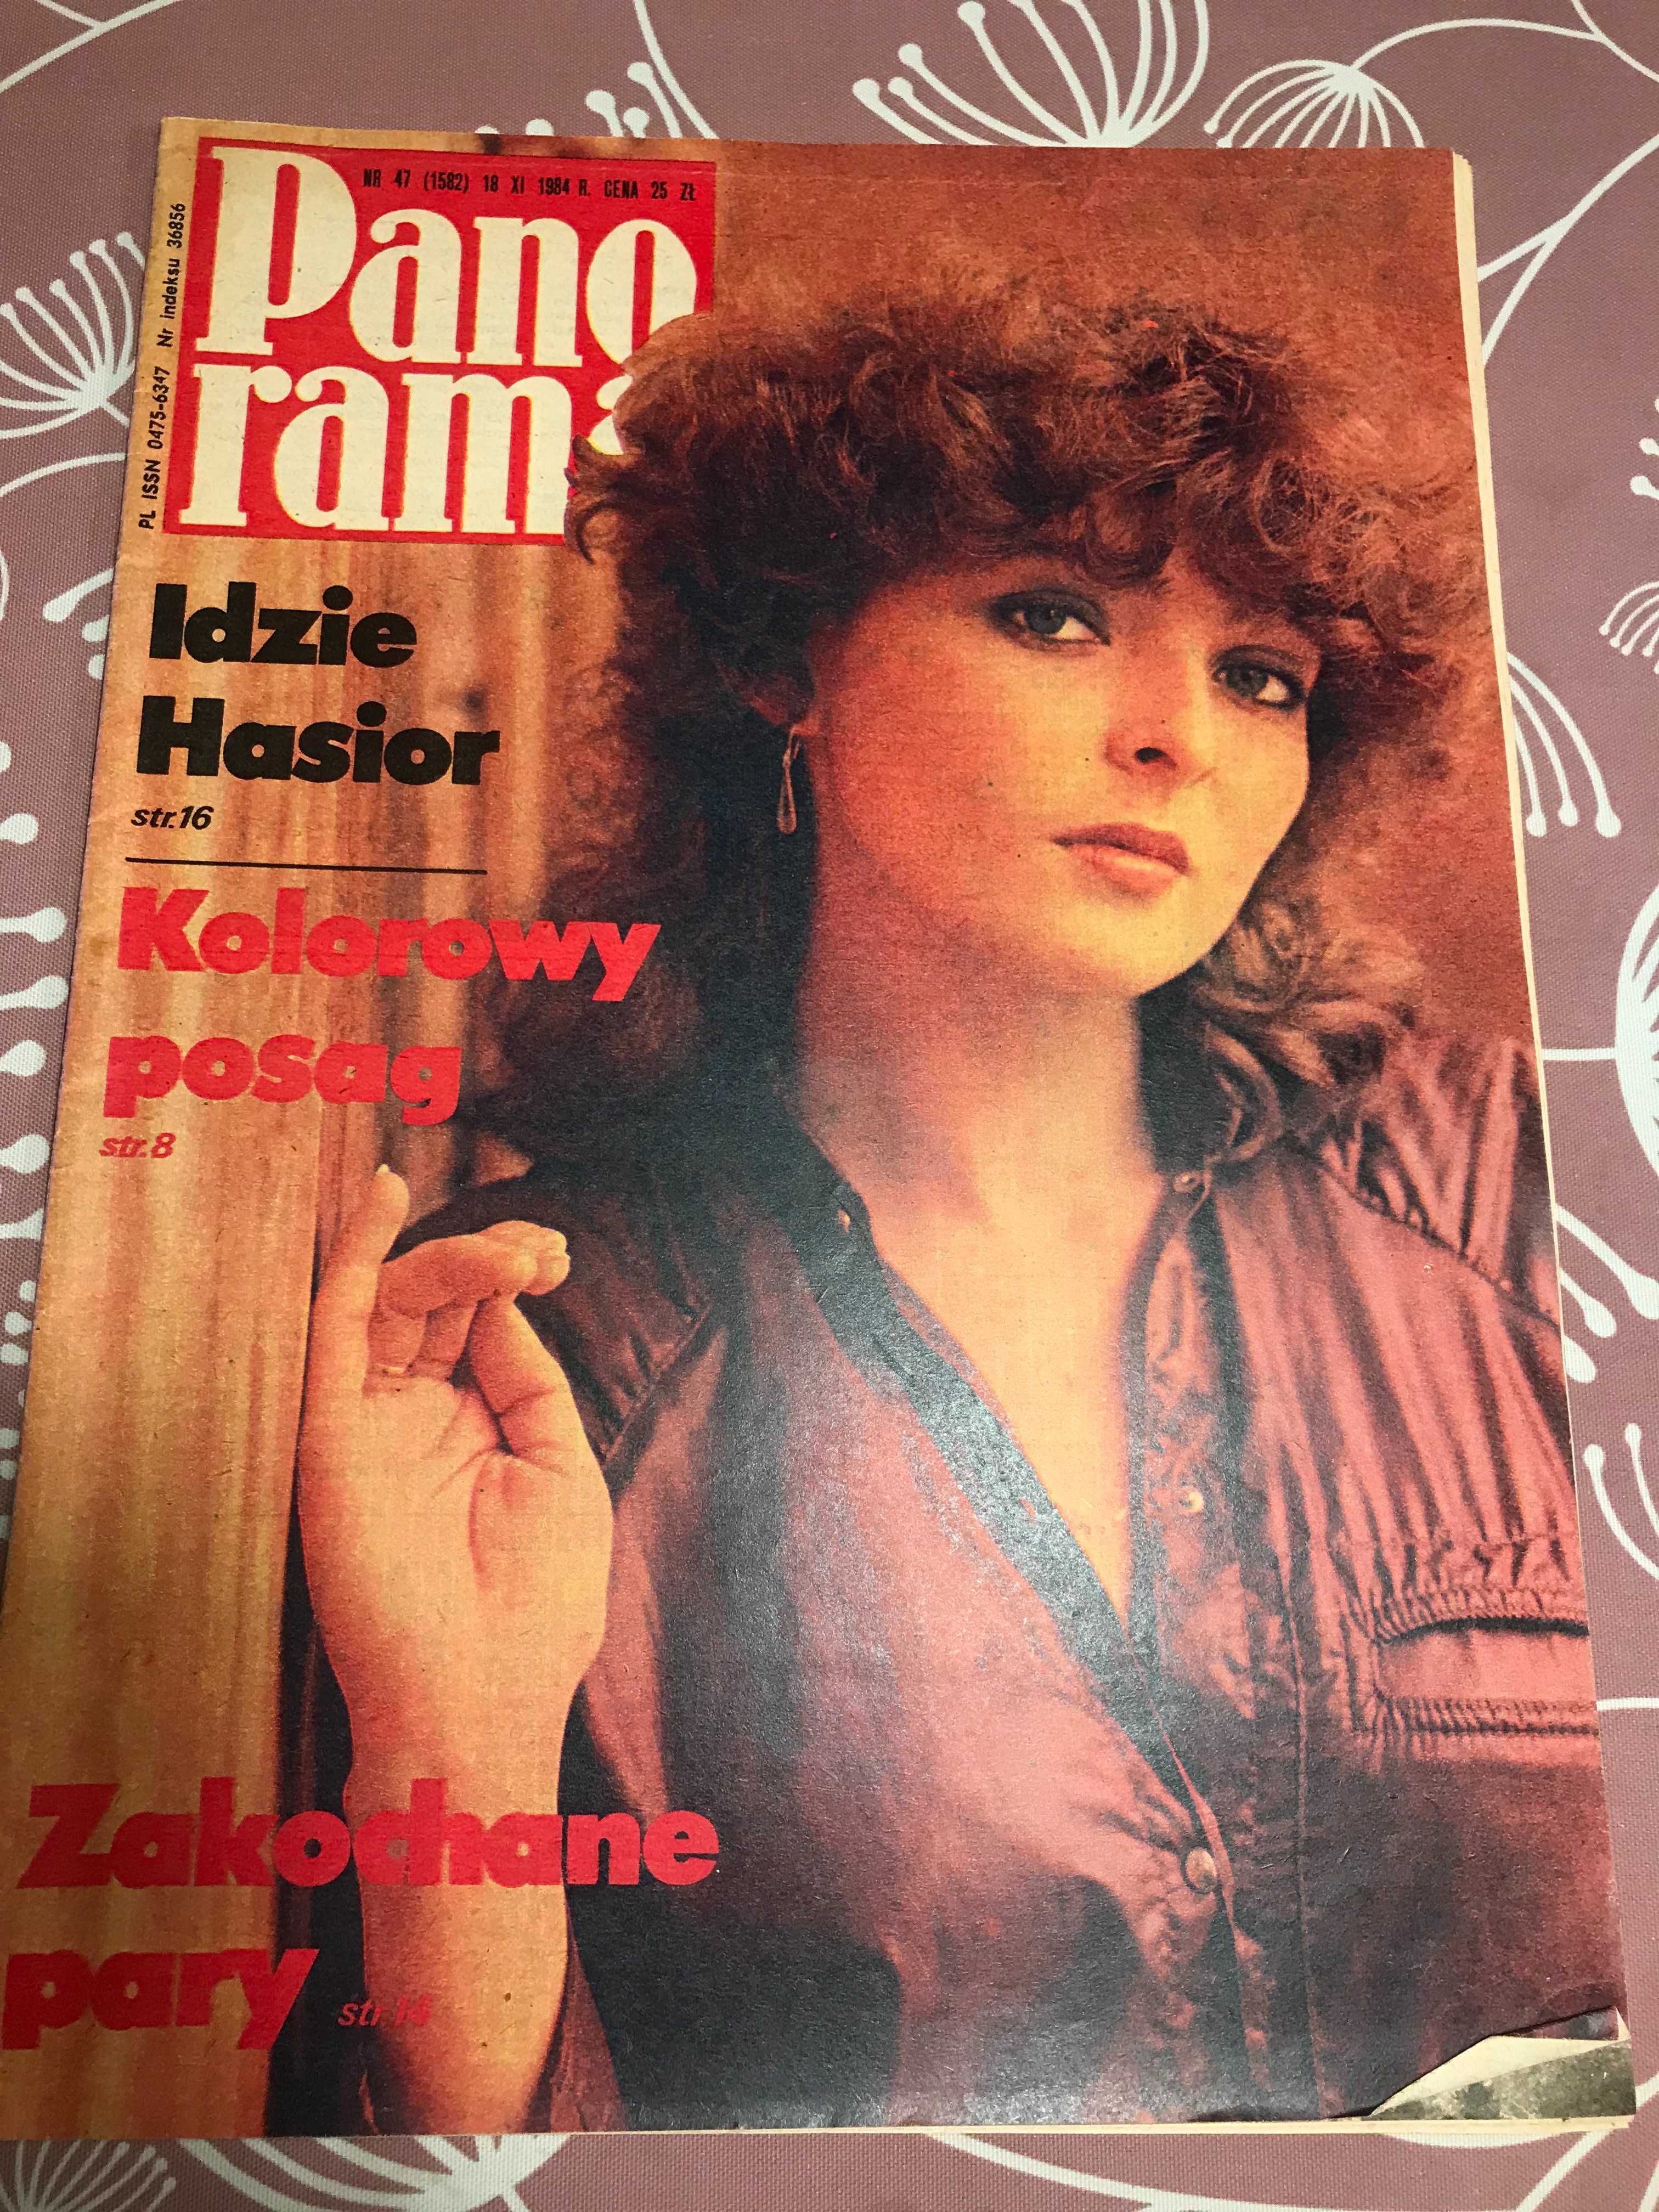 Panorama - 13 numerów z 1984 roku